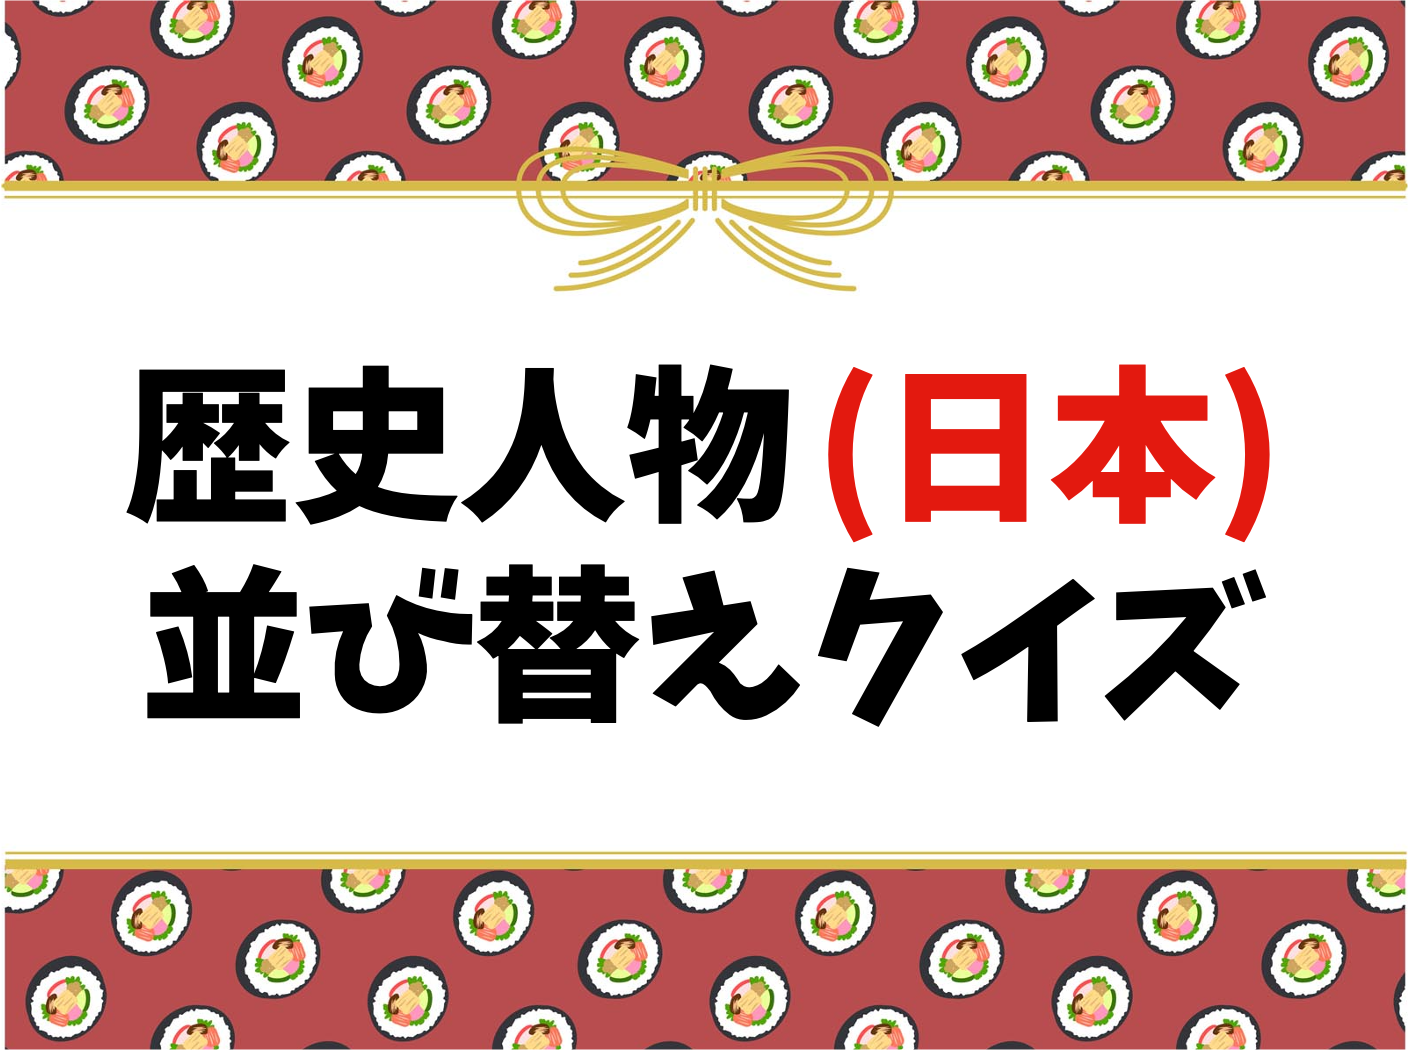 歴史人物 日本 並び替えクイズ 子ども向け 偉人 有名人物の名前を完成させよう クイズ王国